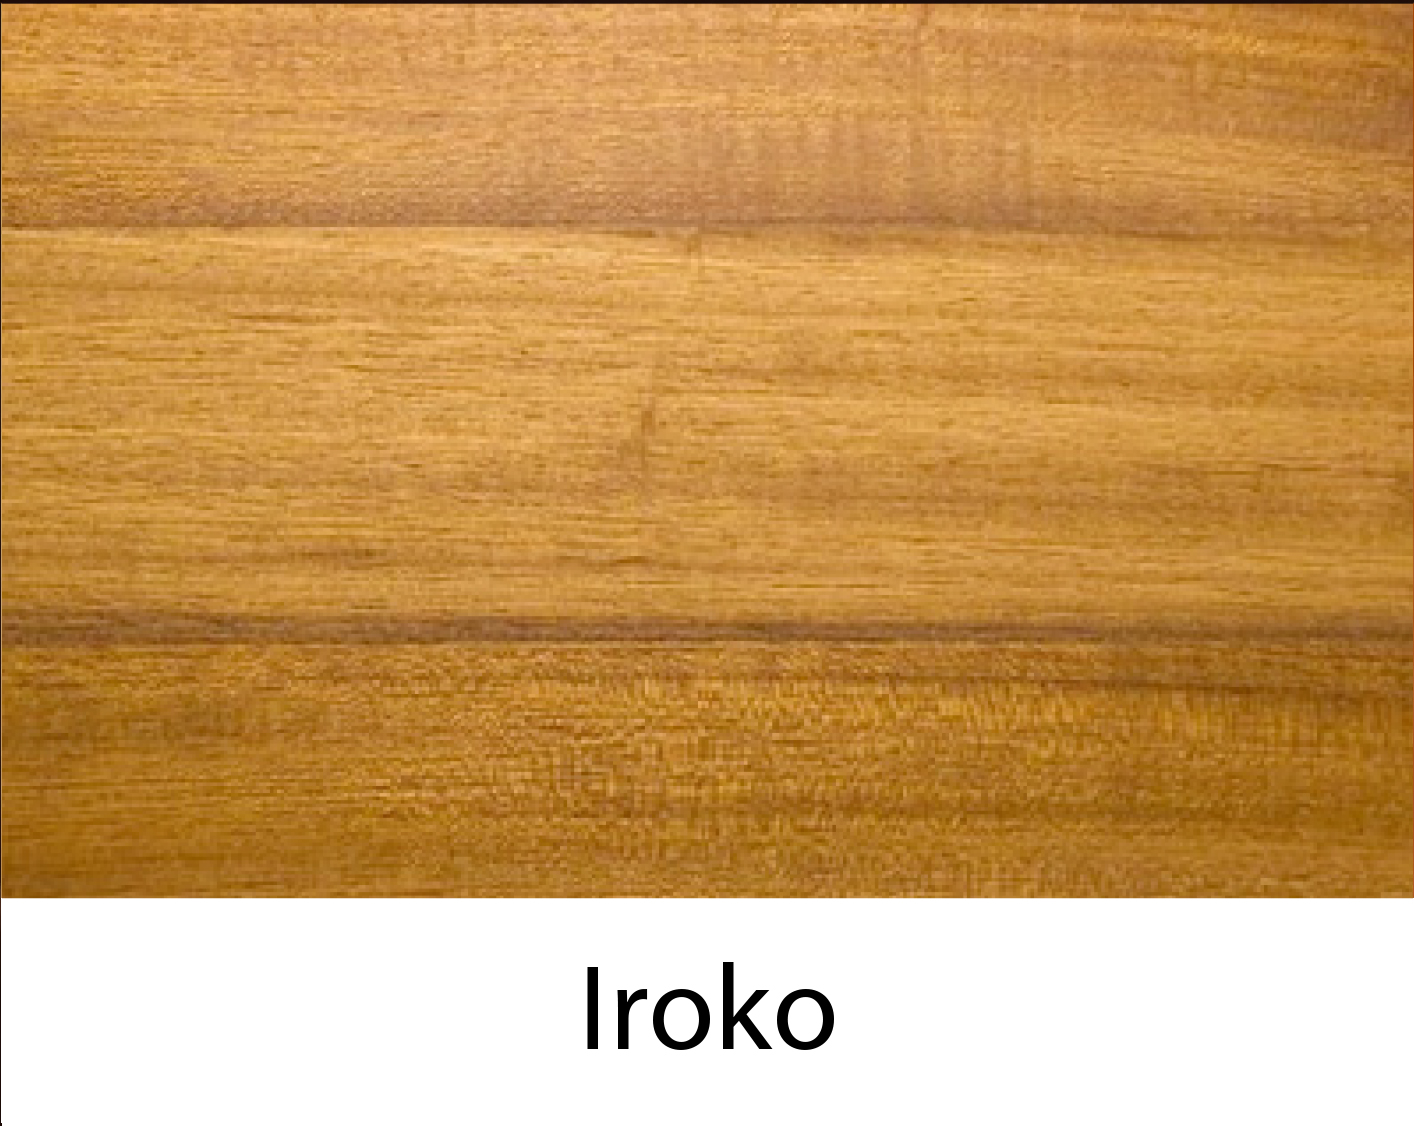 Iroko